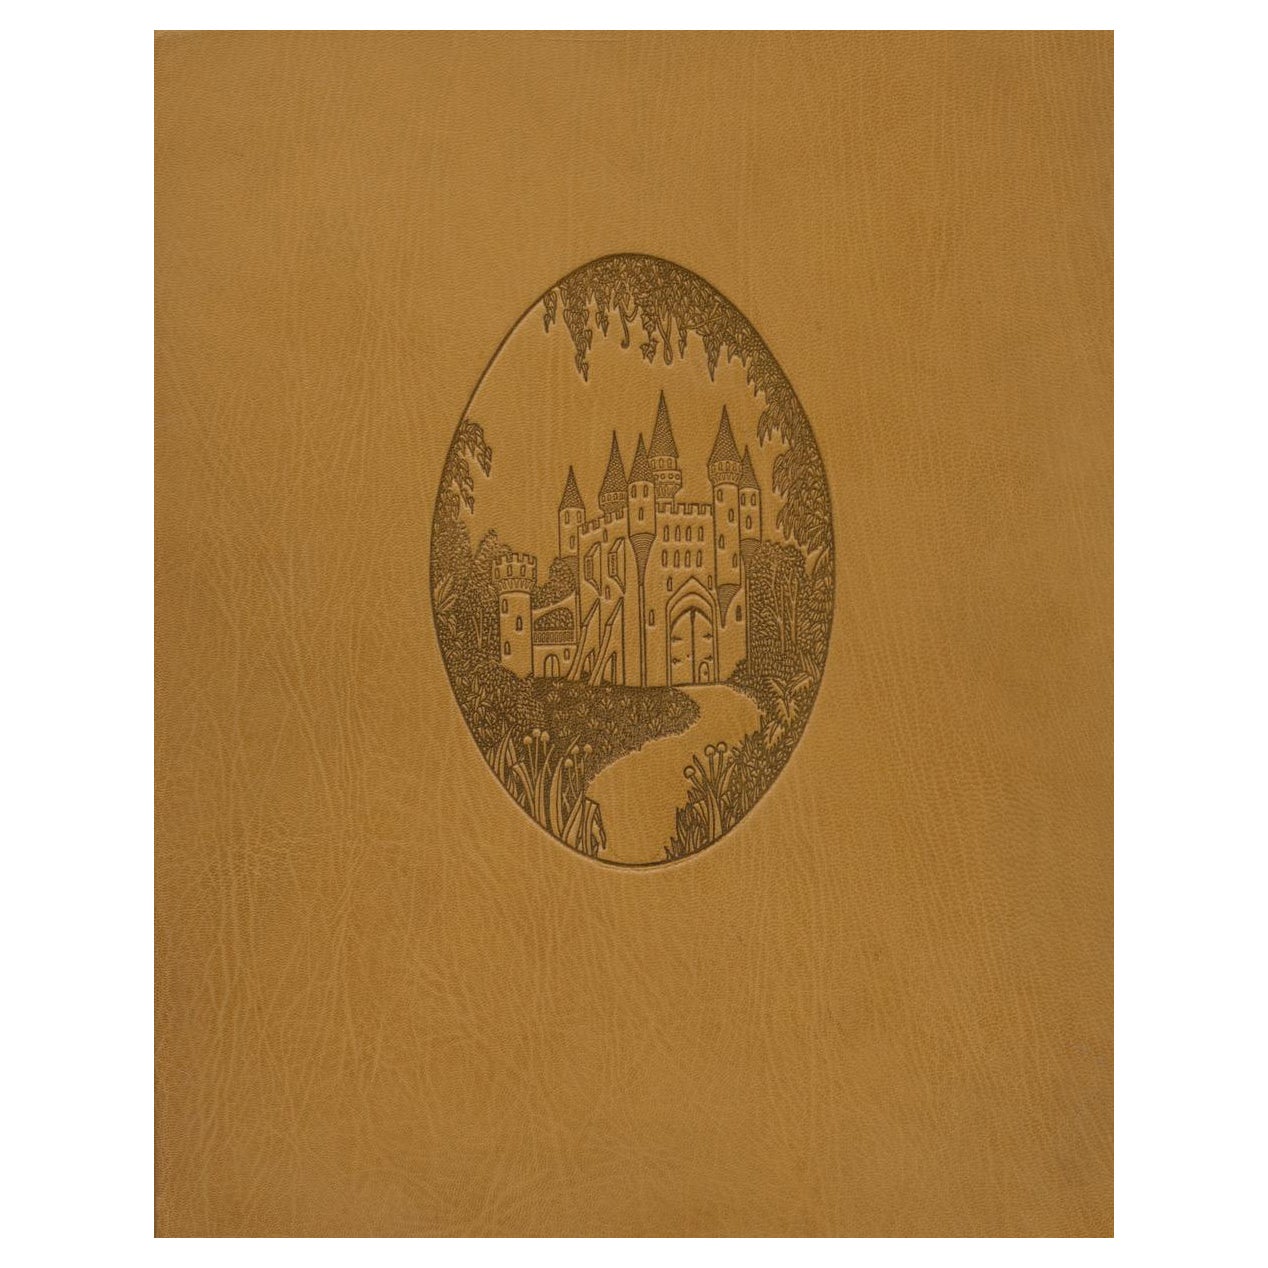 D'après le funéral de Paul Scott, une édition illustrée de Whittington Press en vente